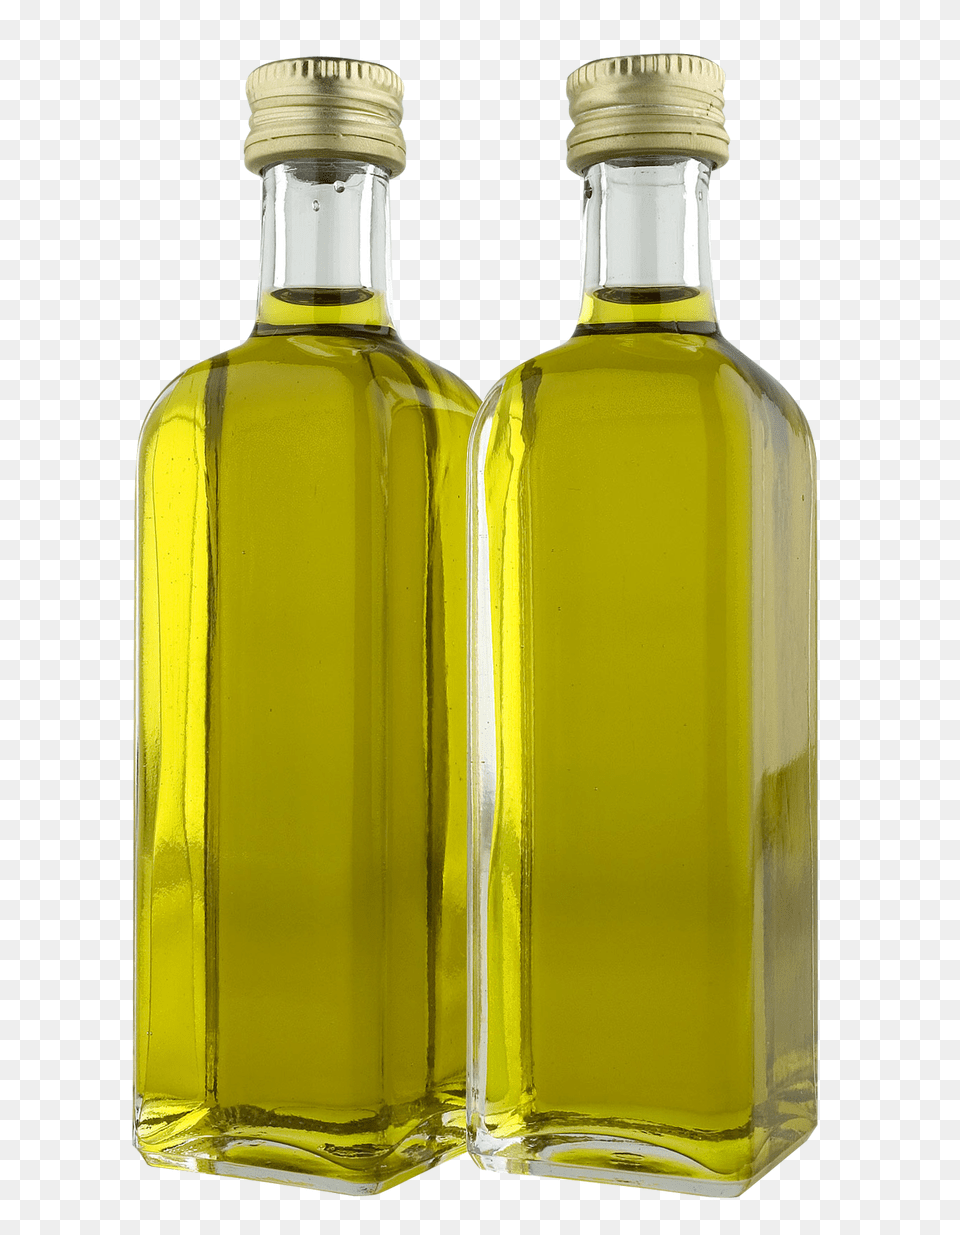 Olive Oil, Cooking Oil, Food, Bottle, Shaker Free Png Download